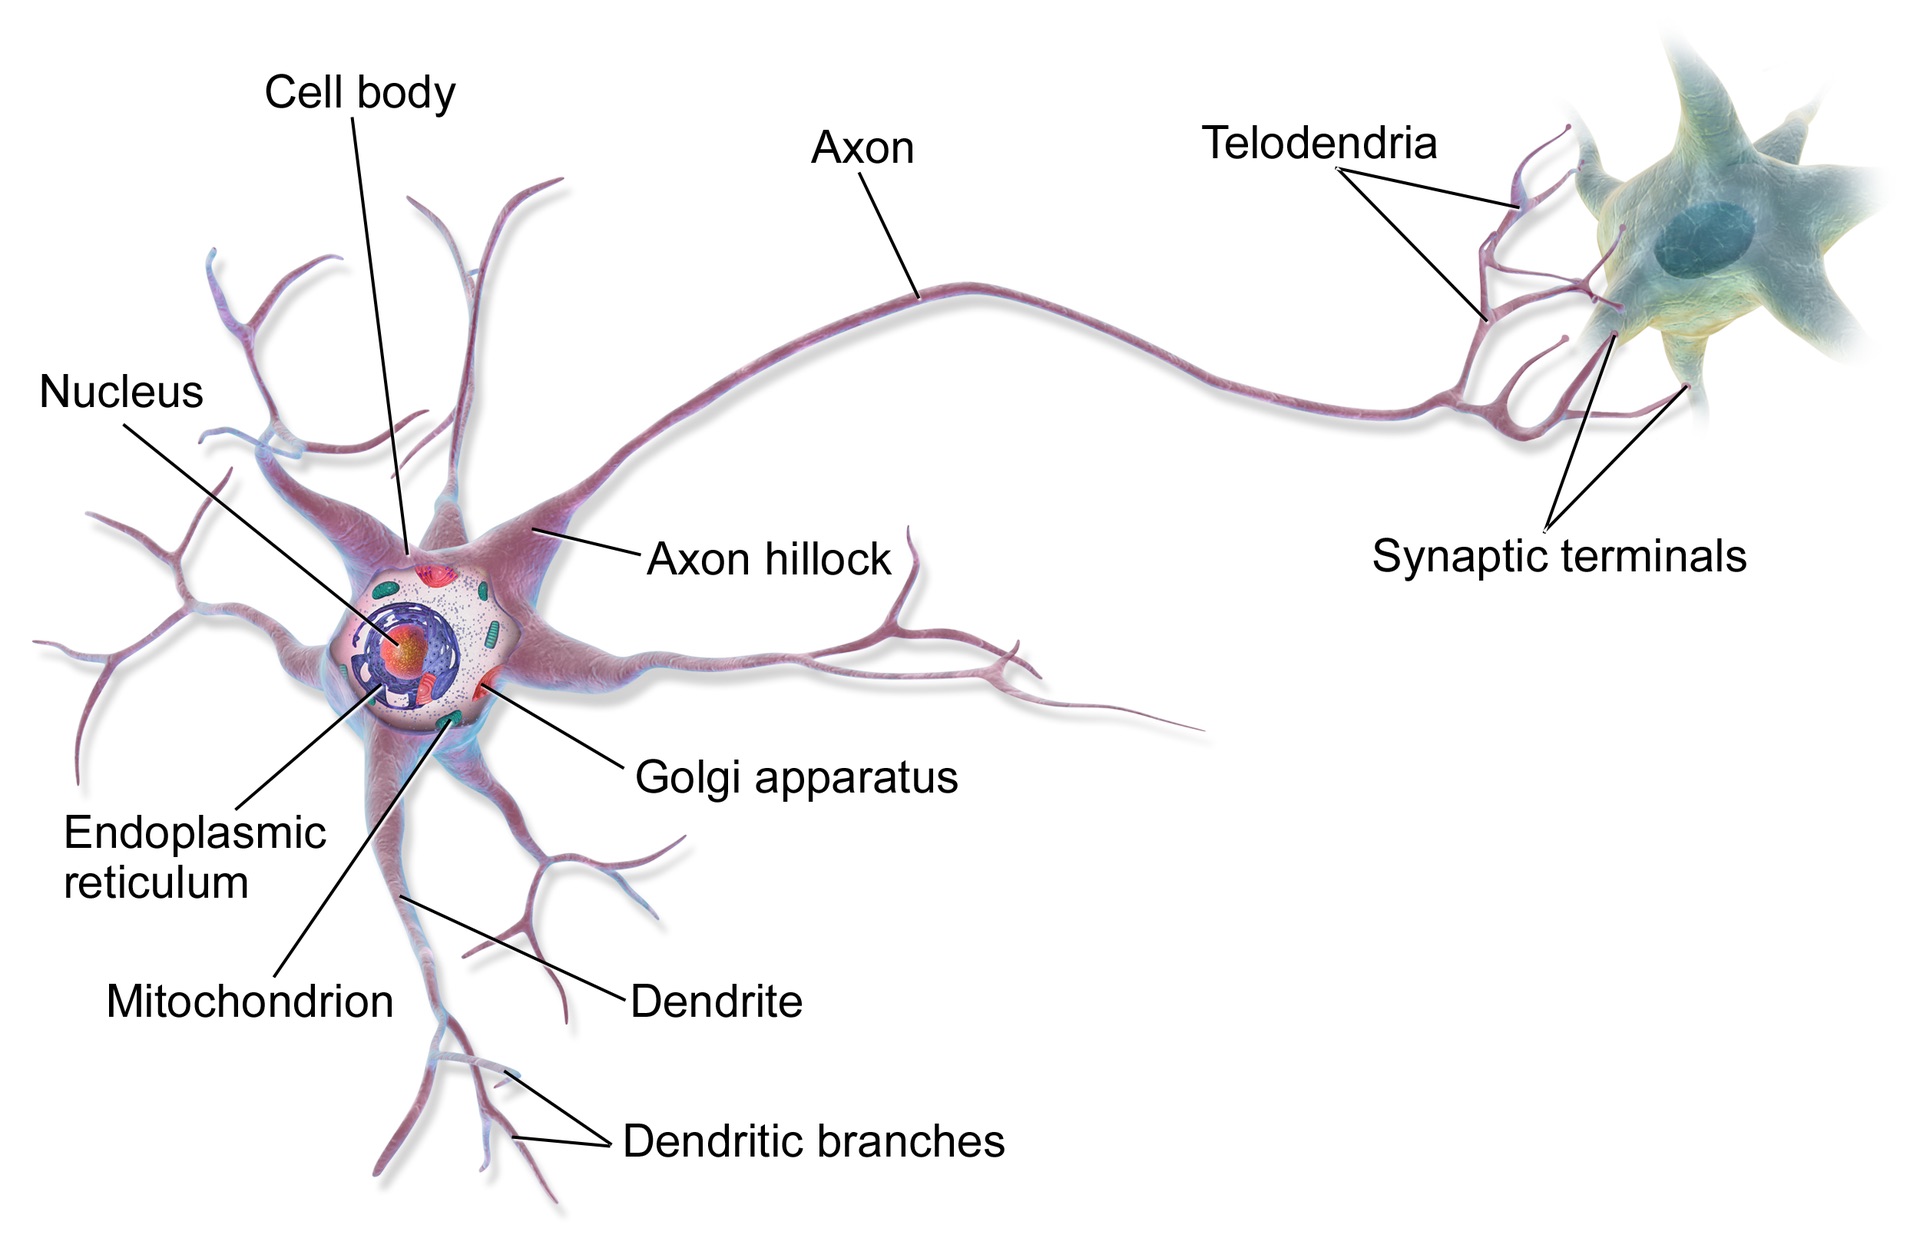 https://en.m.wikipedia.org/wiki/Neuron